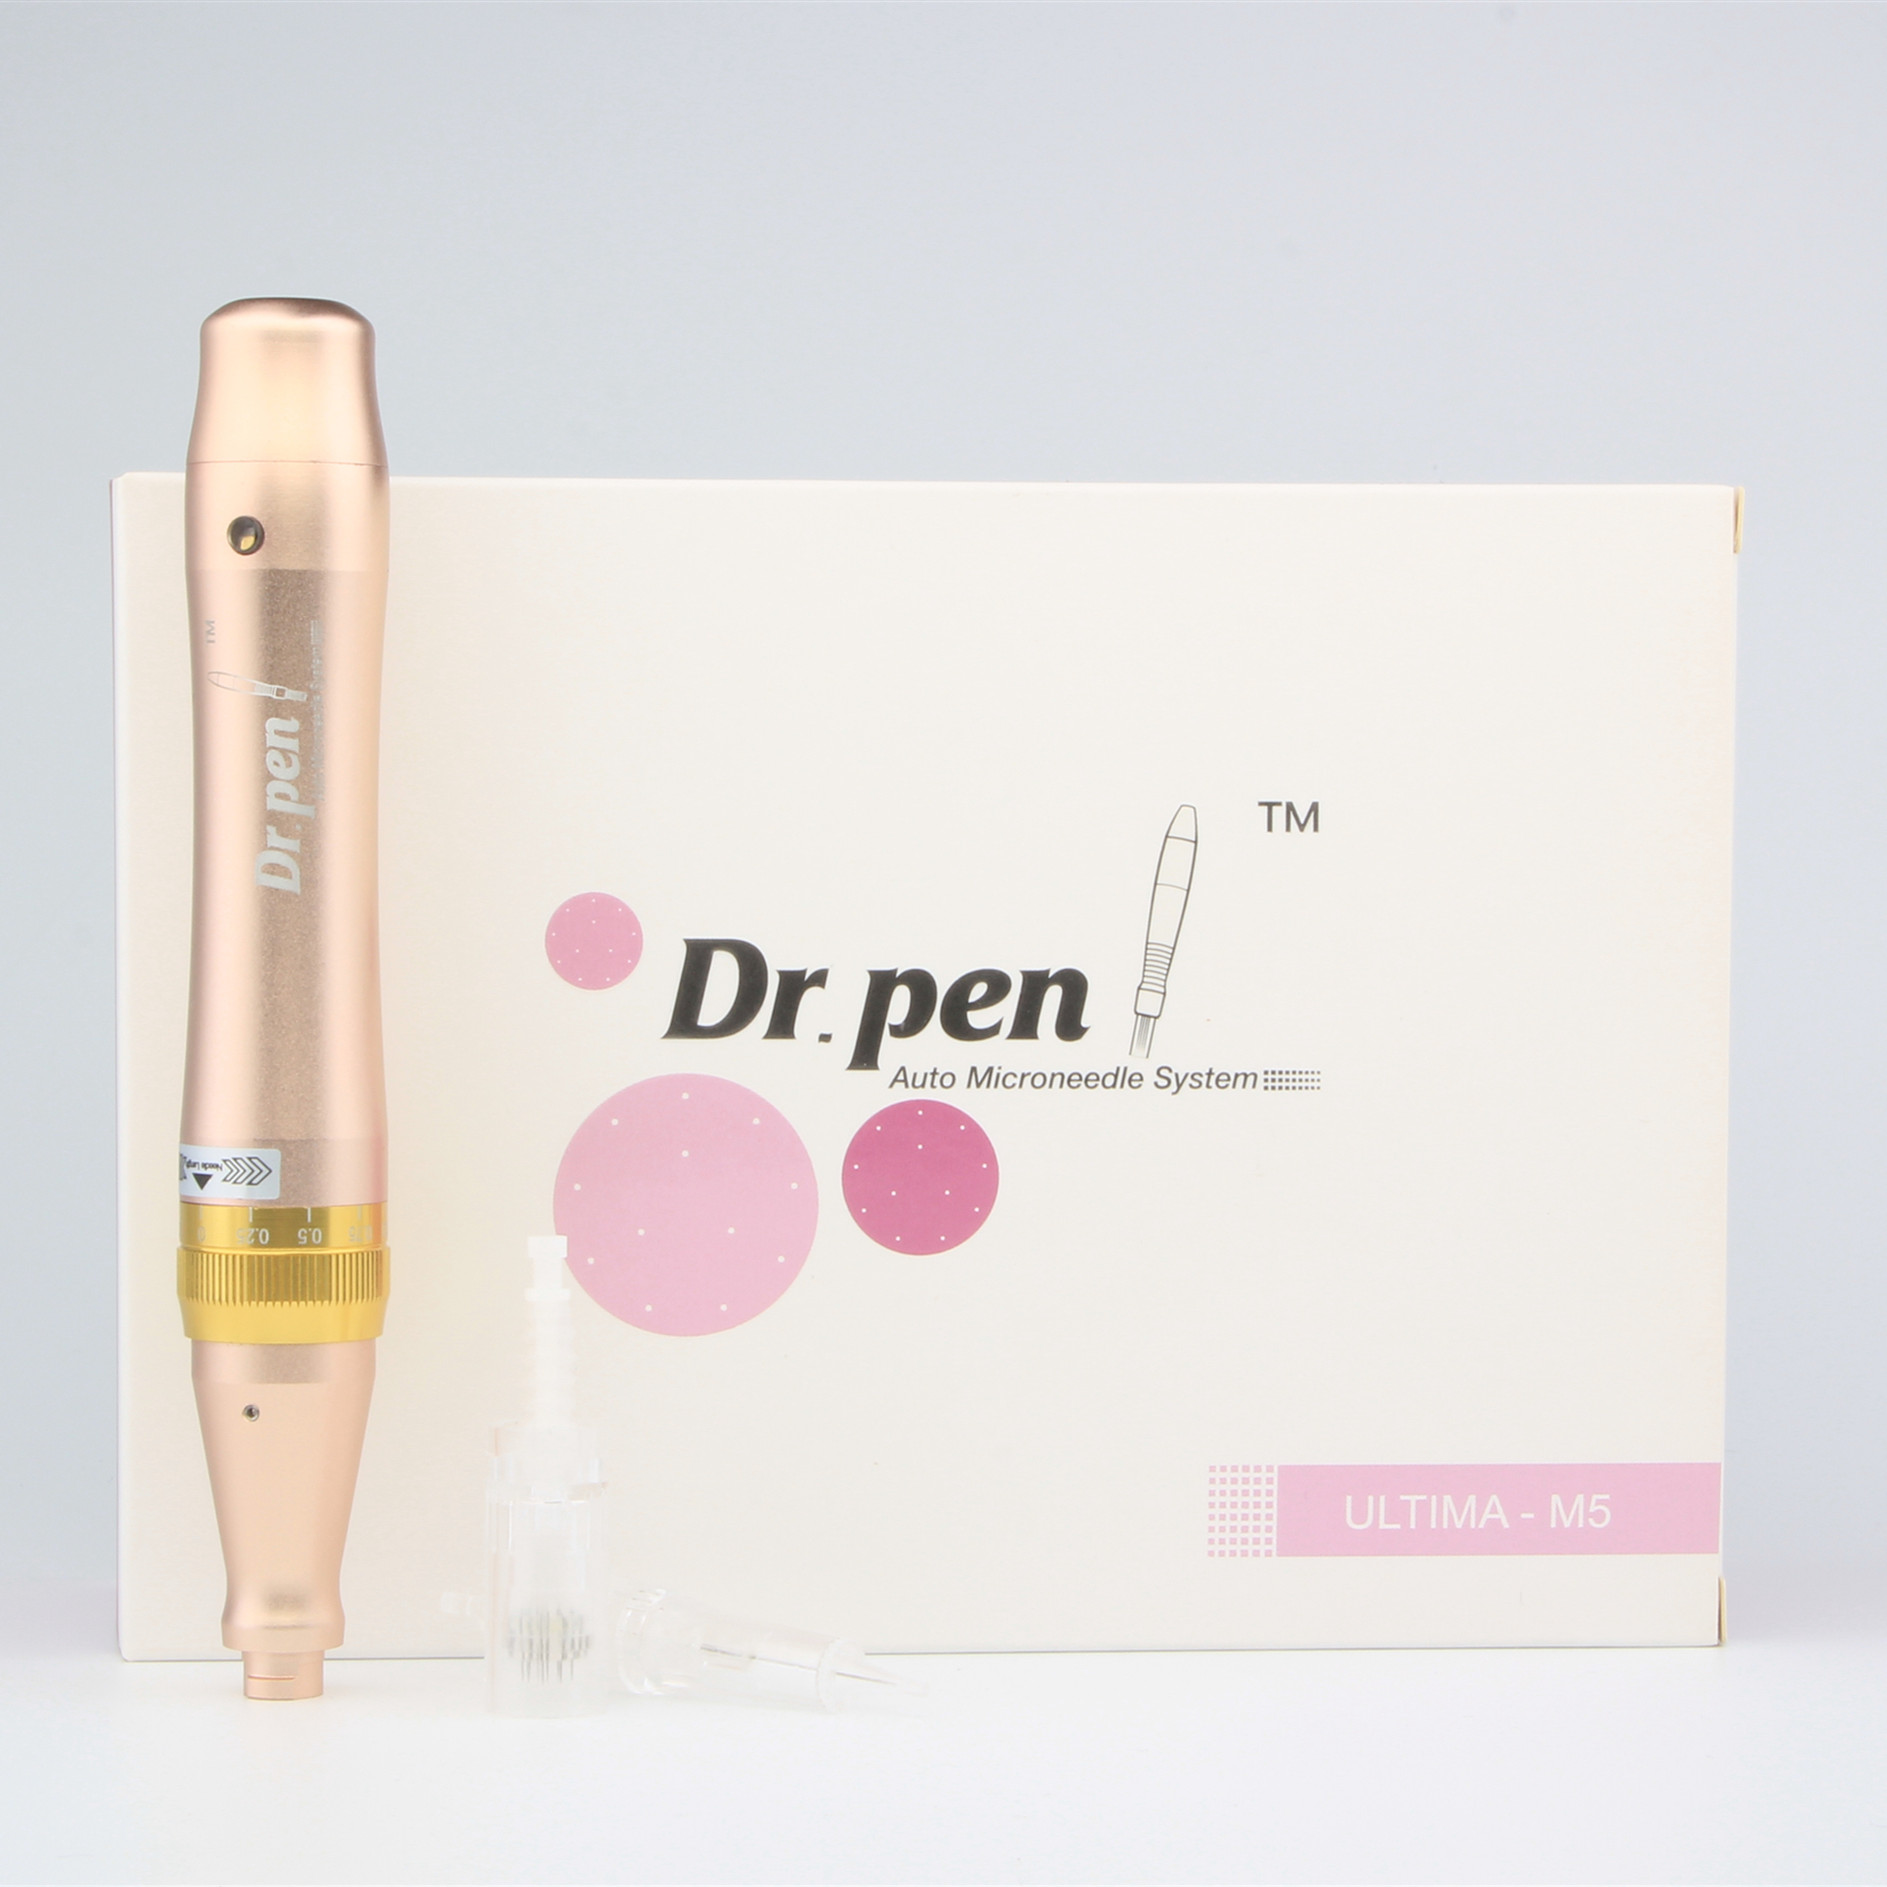 Derma Pen M5 Electric Microneedling Derma Pen for Skin Care